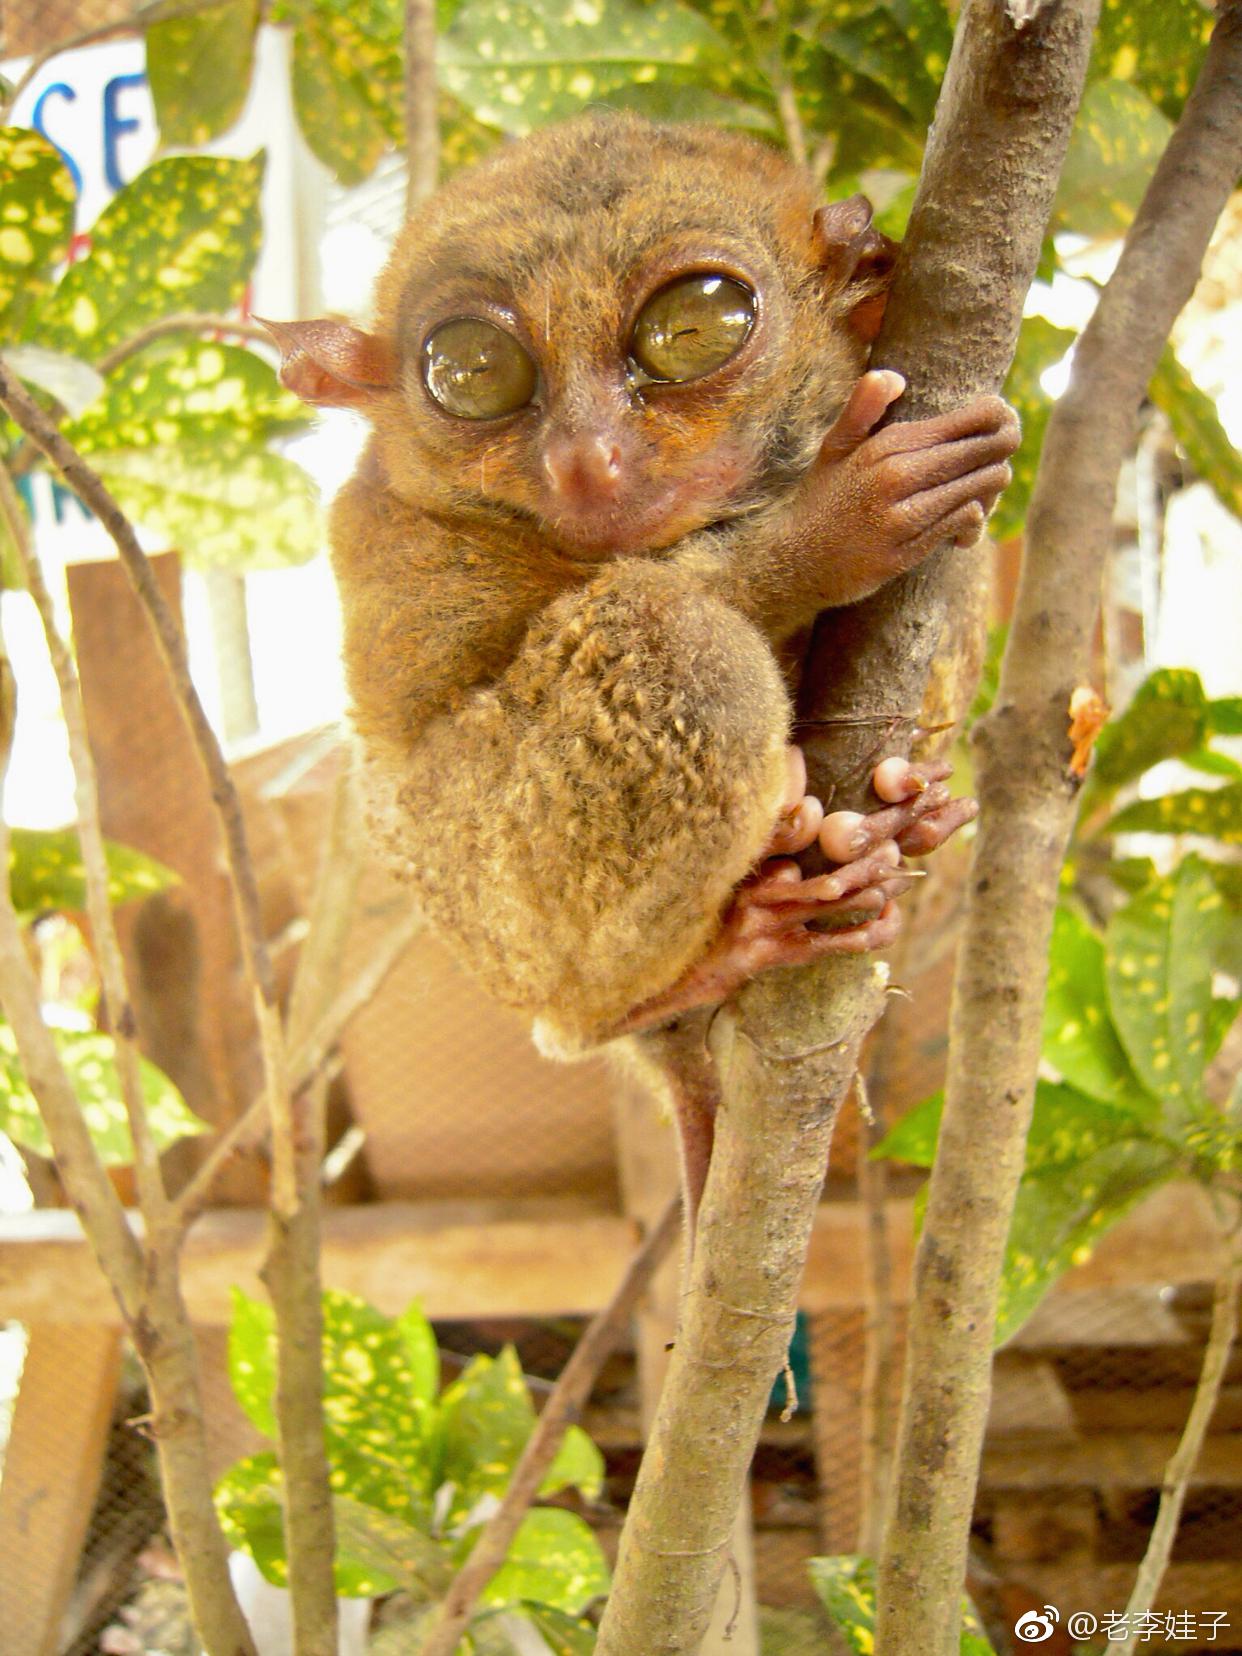 菲律宾的眼镜猴又称大眼猴是一种珍贵的小型猴类